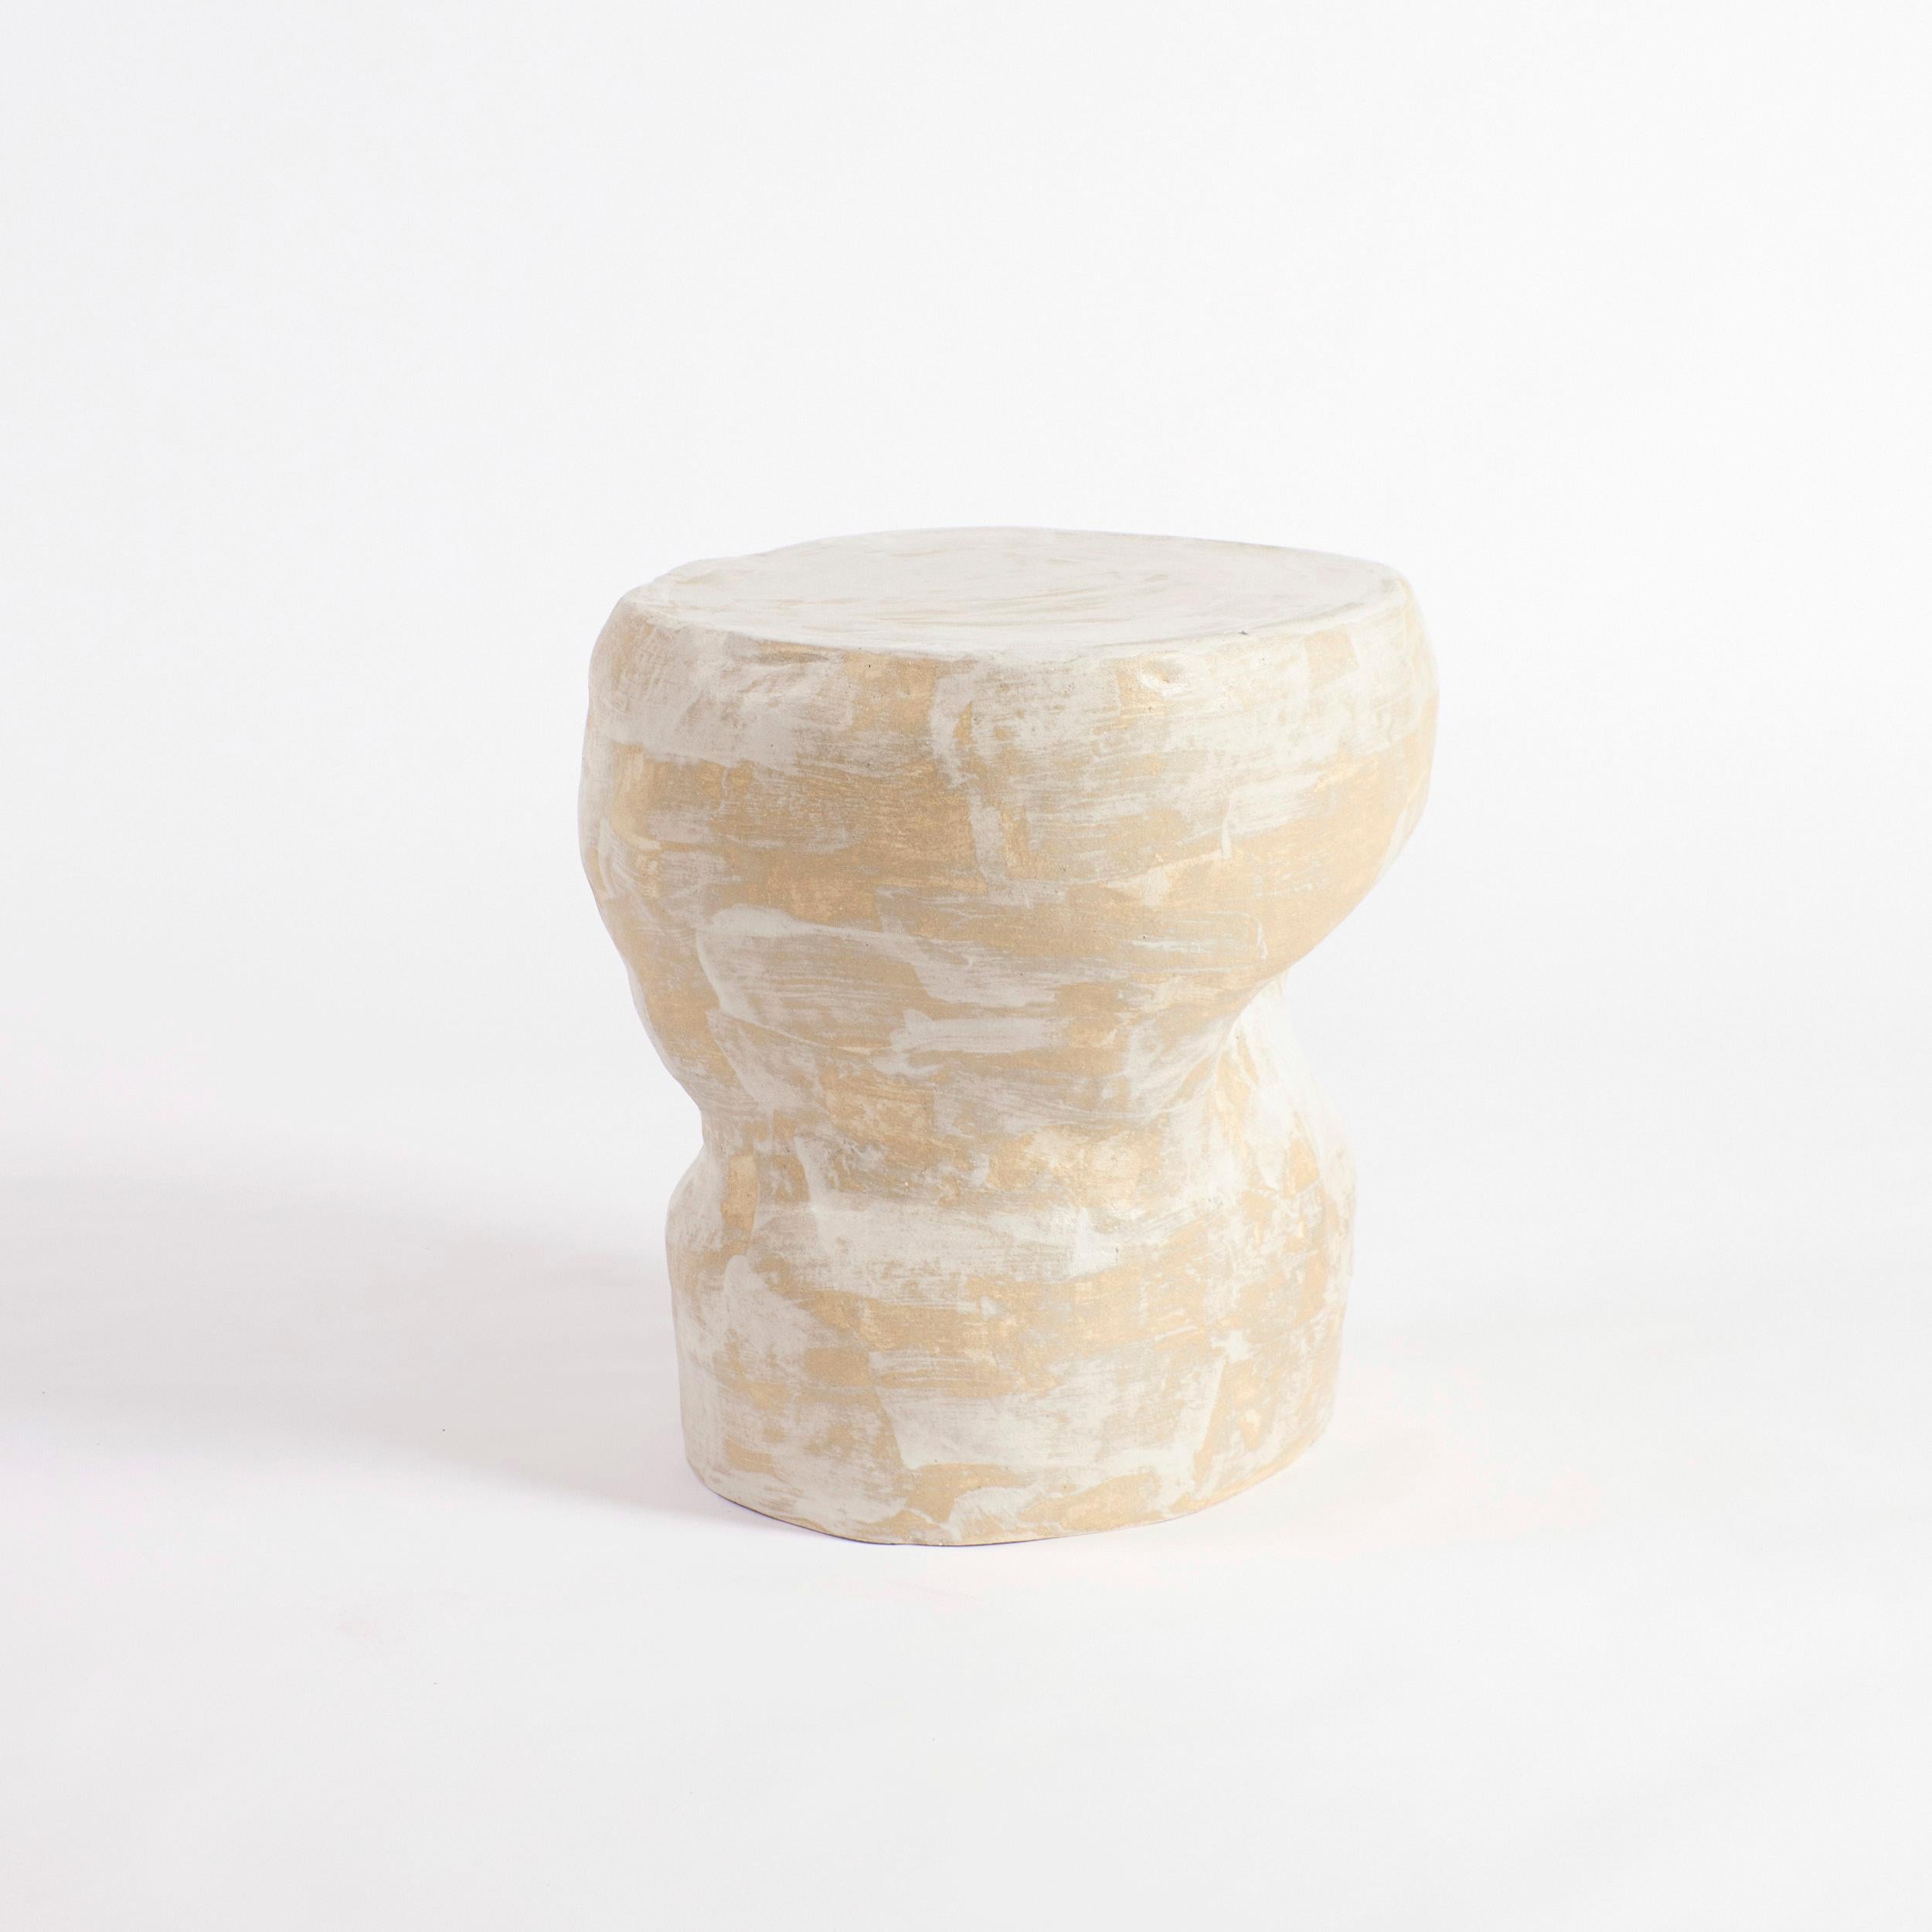 Table d'appoint en céramique artisanale en blanc crème translucide par Project 213A.
Fabriqué dans l'atelier de céramique de la marque.

Cette table suit un modèle de design général lancé en 2023, mais en raison du processus artisanal et émaillé à